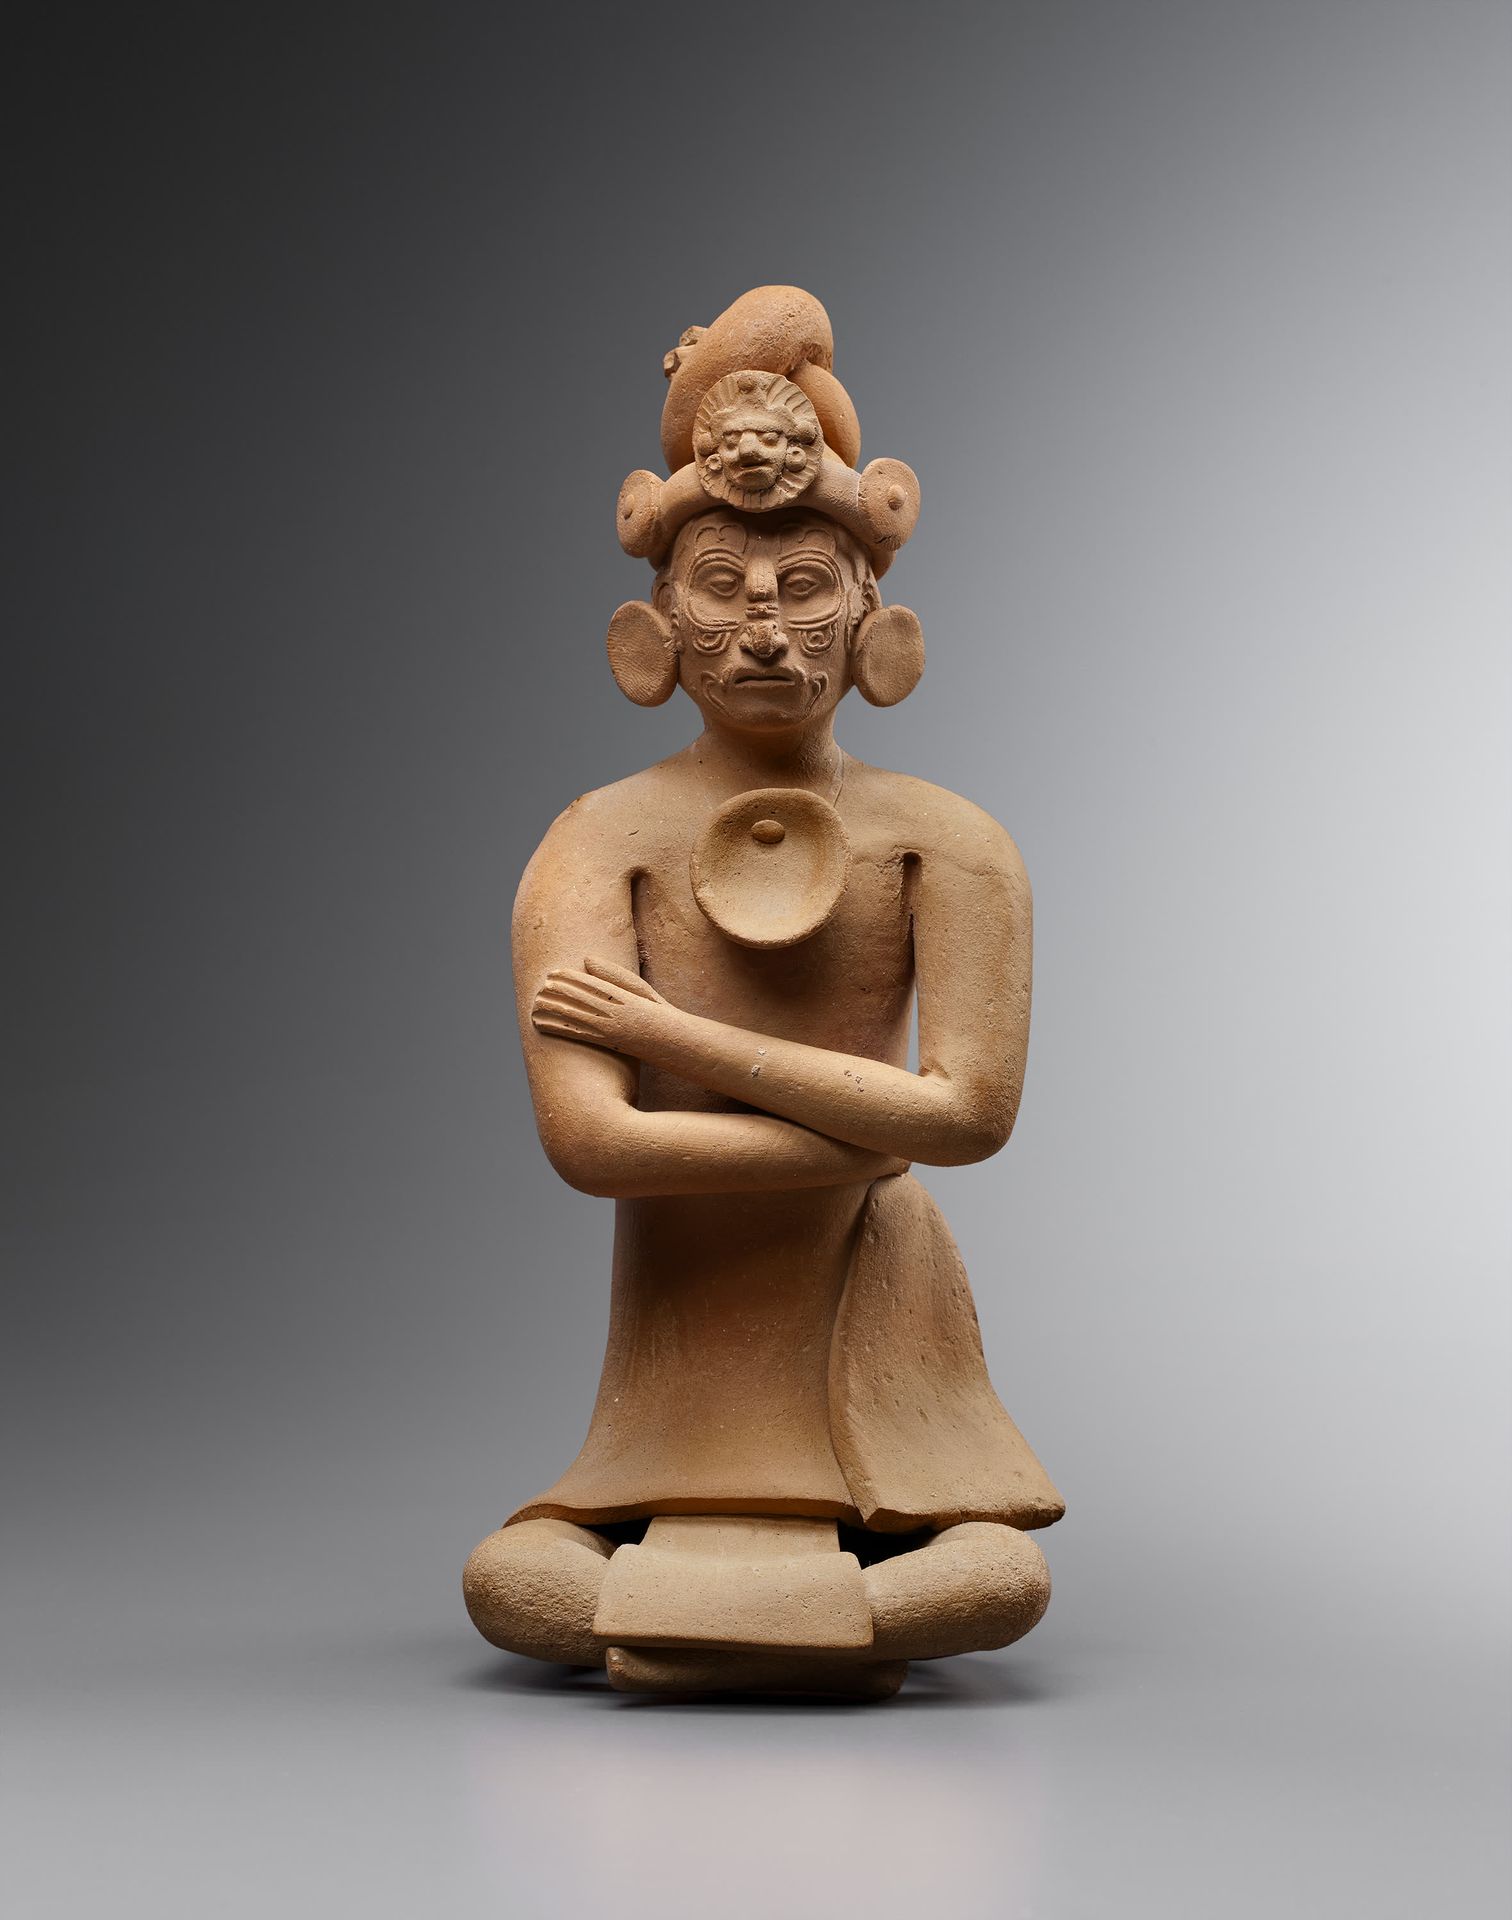 *Ocarina cérémoniel 
que representa a un dignatario sentado en una postura hierá&hellip;